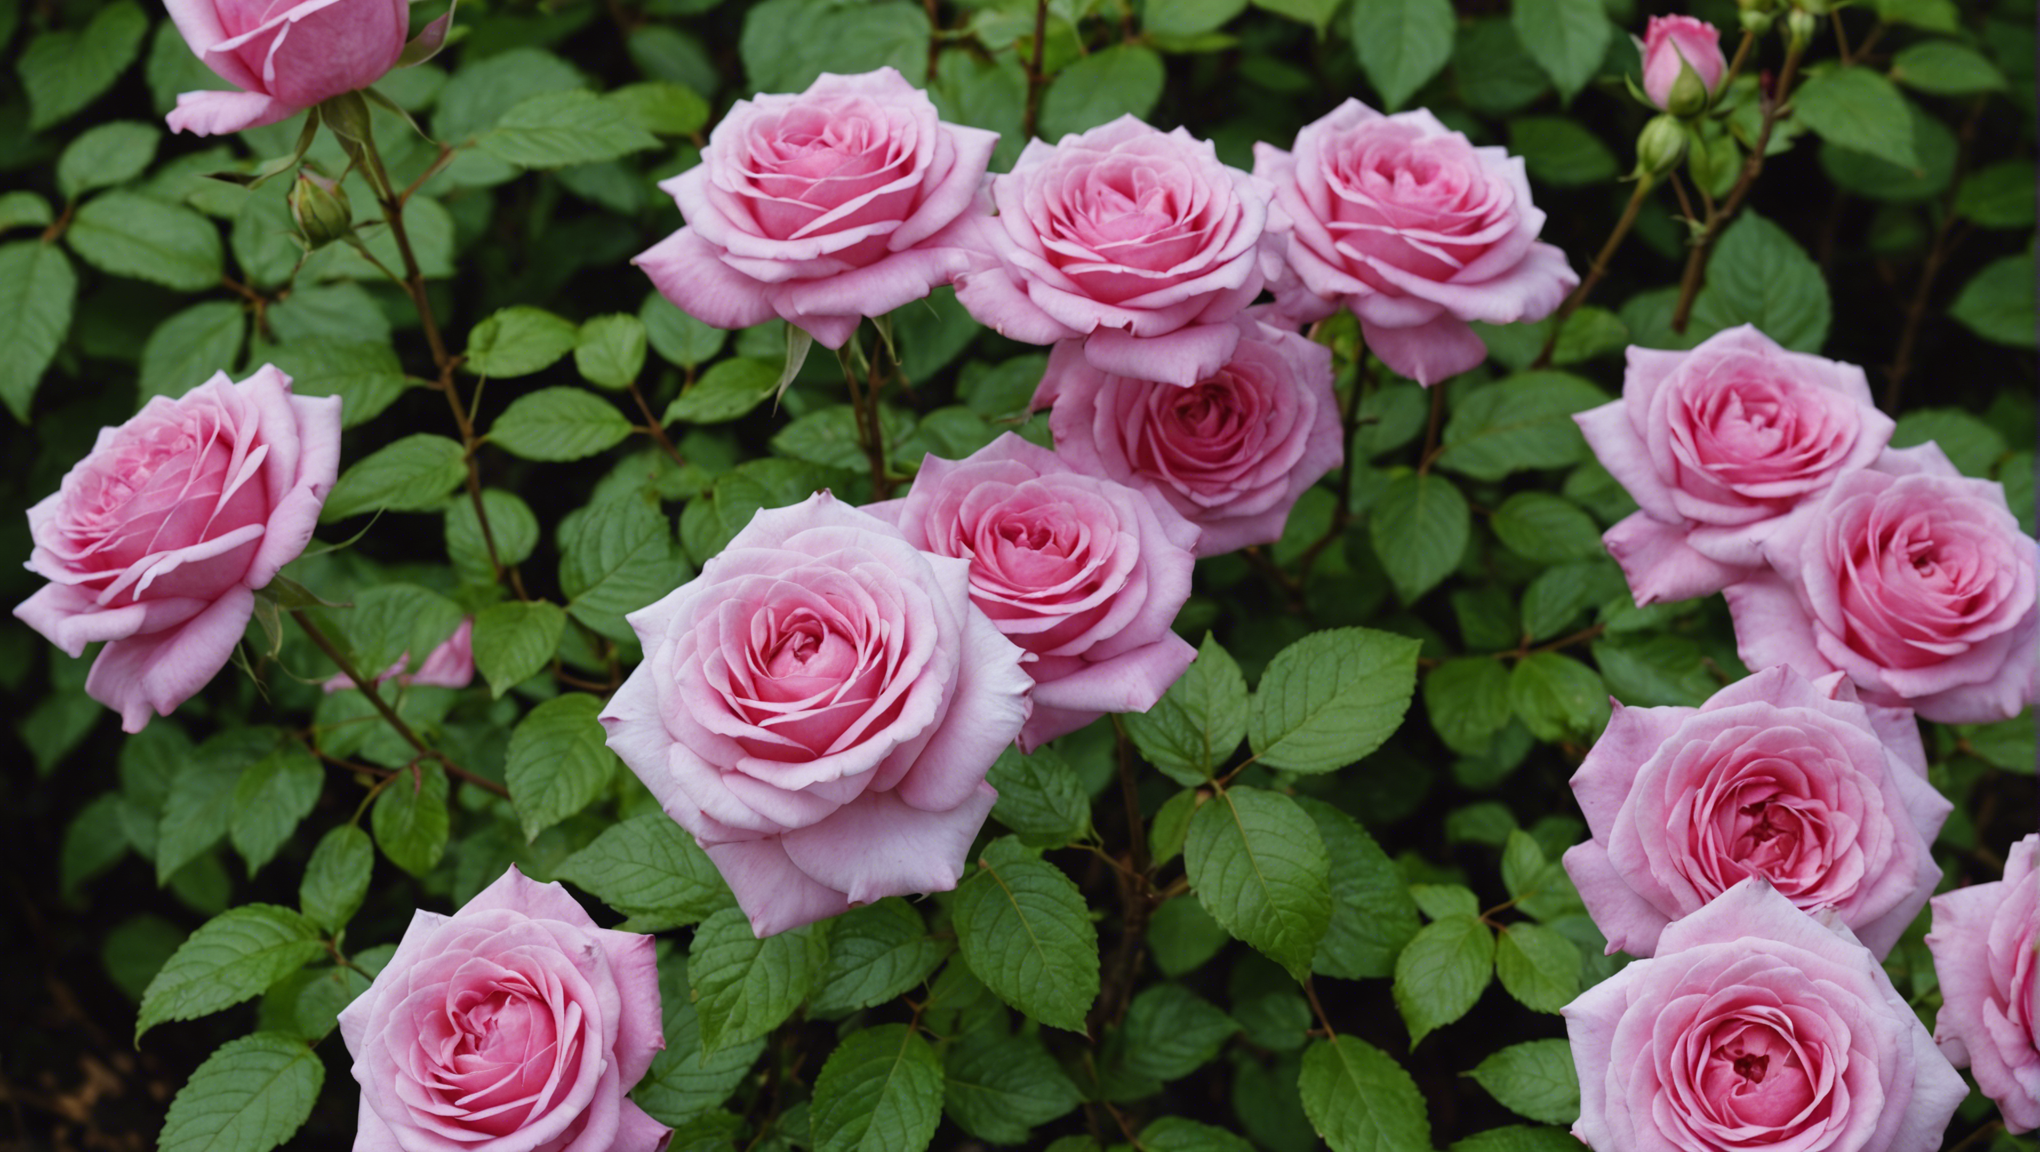 découvrez nos conseils pratiques pour tailler un laurier rose et favoriser sa croissance et sa floraison. apprenez les techniques de taille adaptées à cet arbuste pour un résultat splendide dans votre jardin.